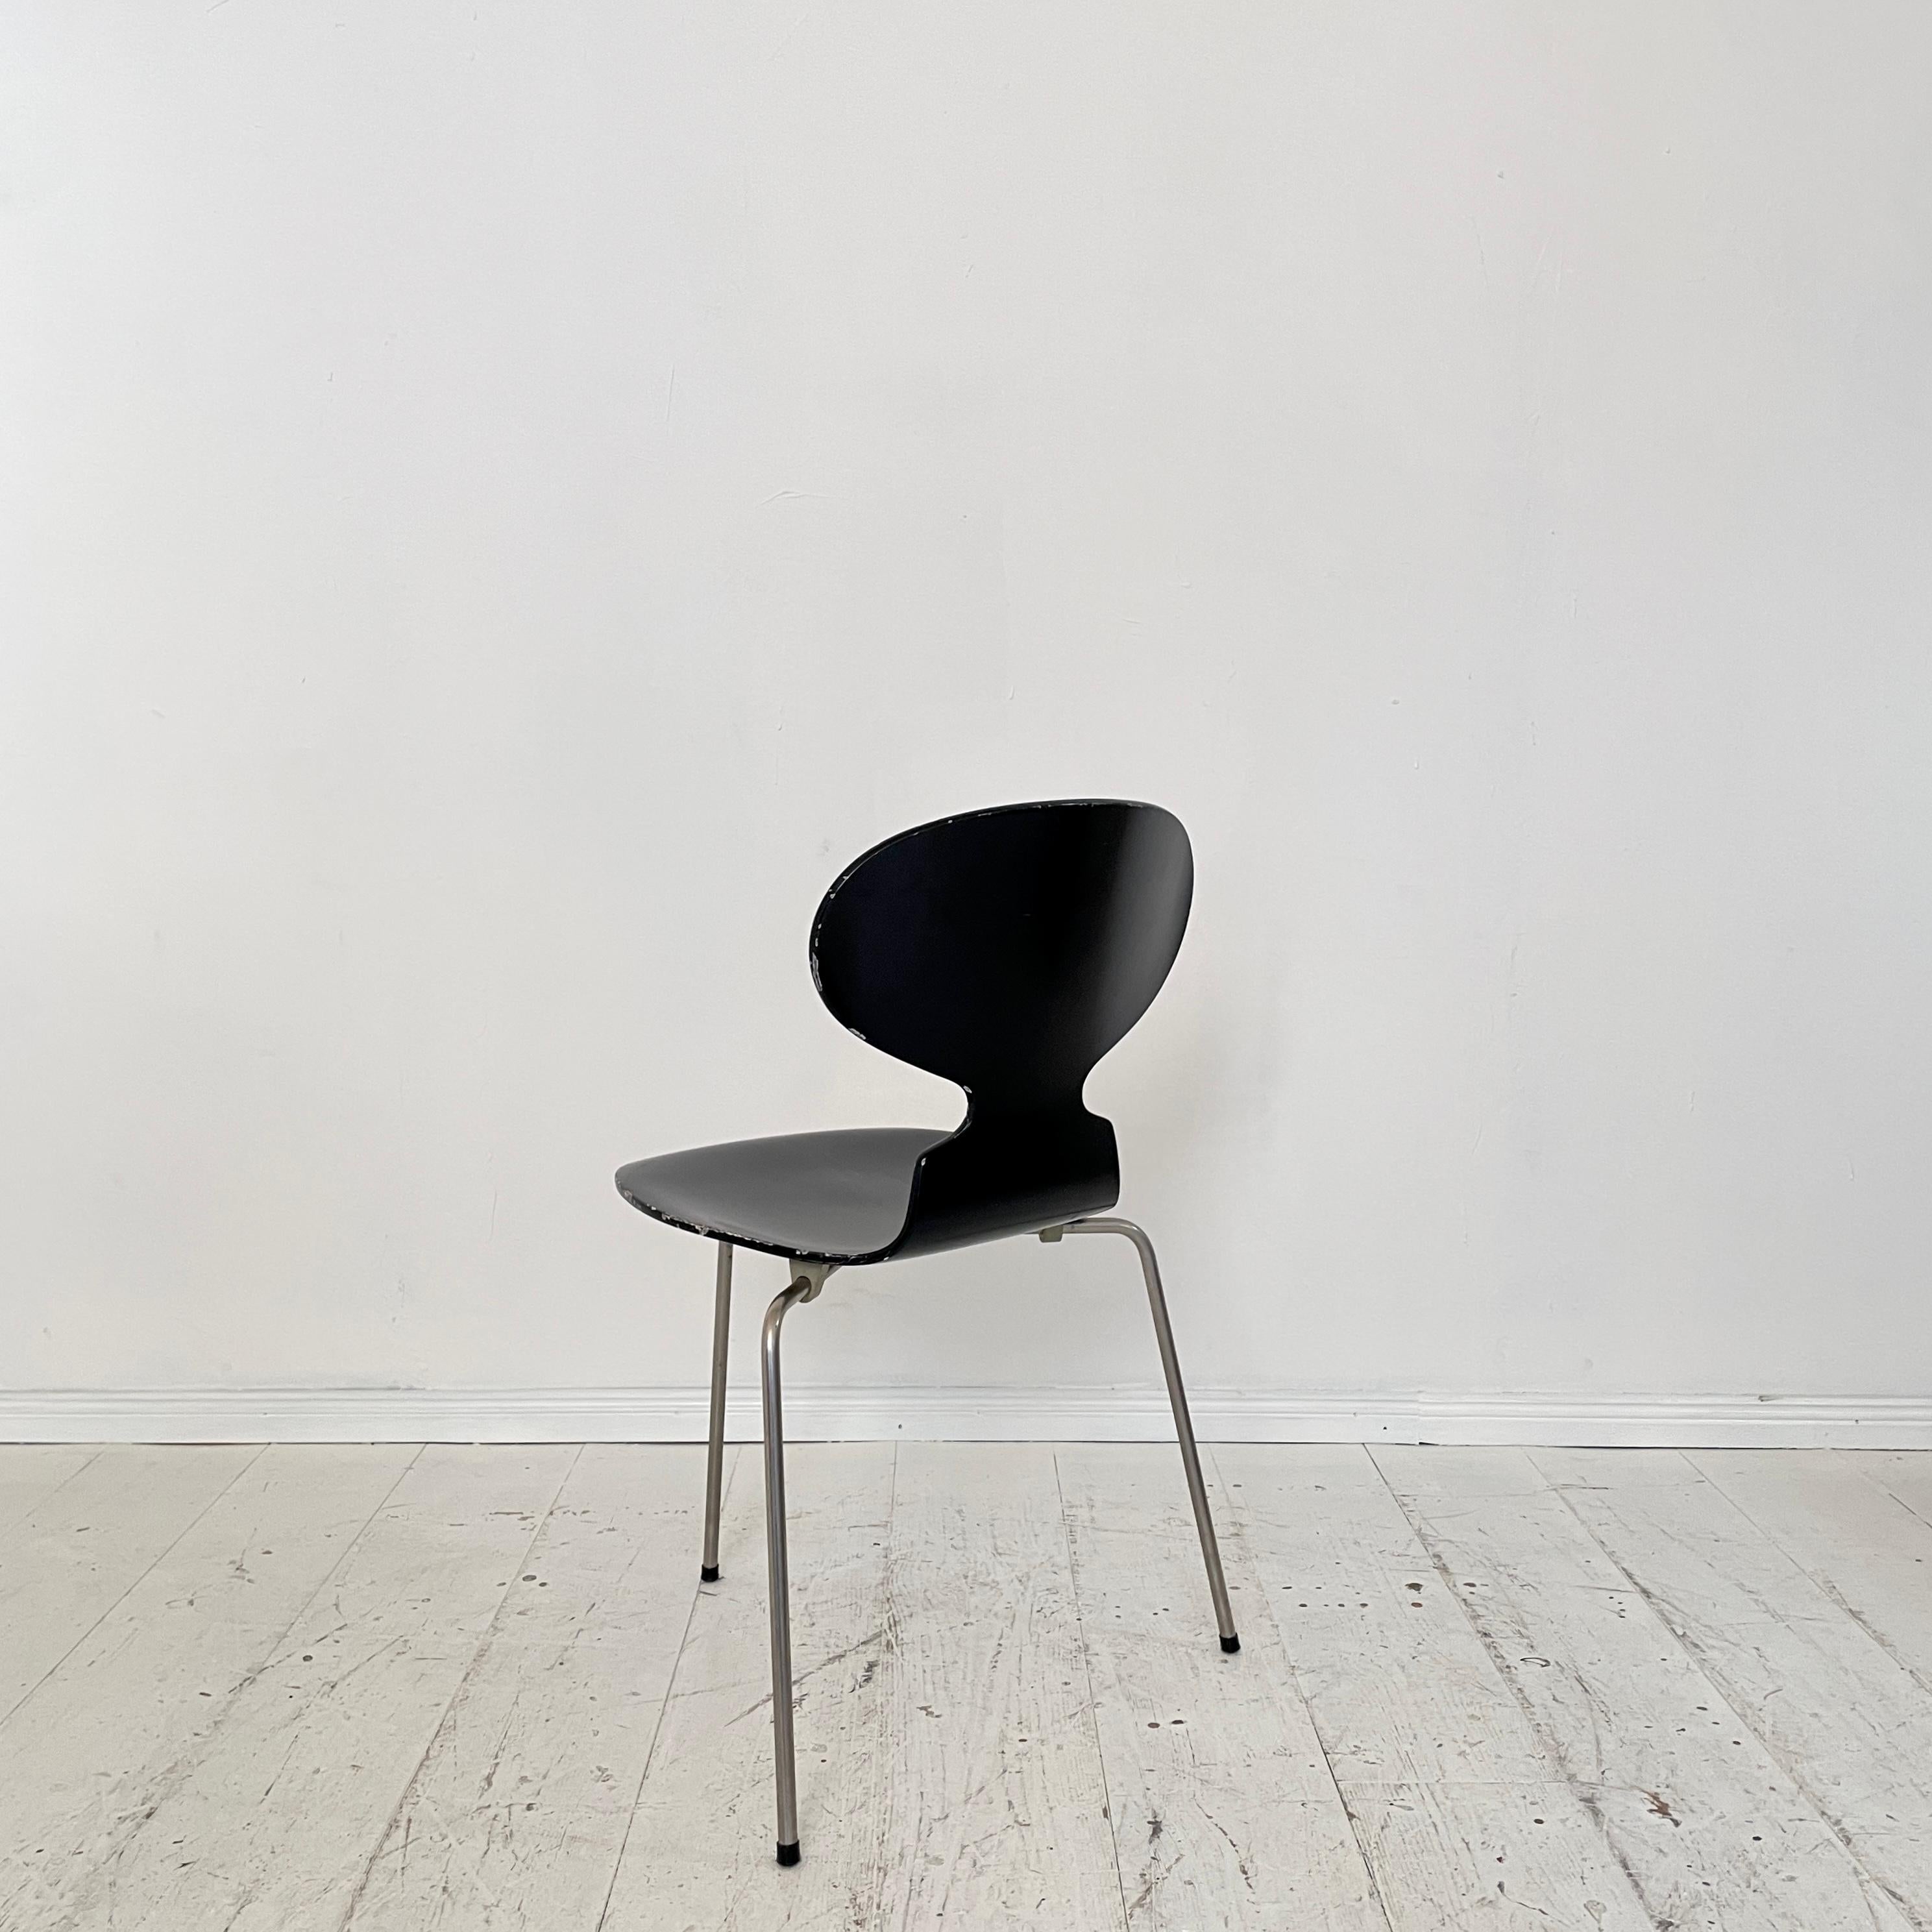 Steel Mid-Century Black Ant Chair by Arne Jacobsen for Fritz Hansen, around 1957